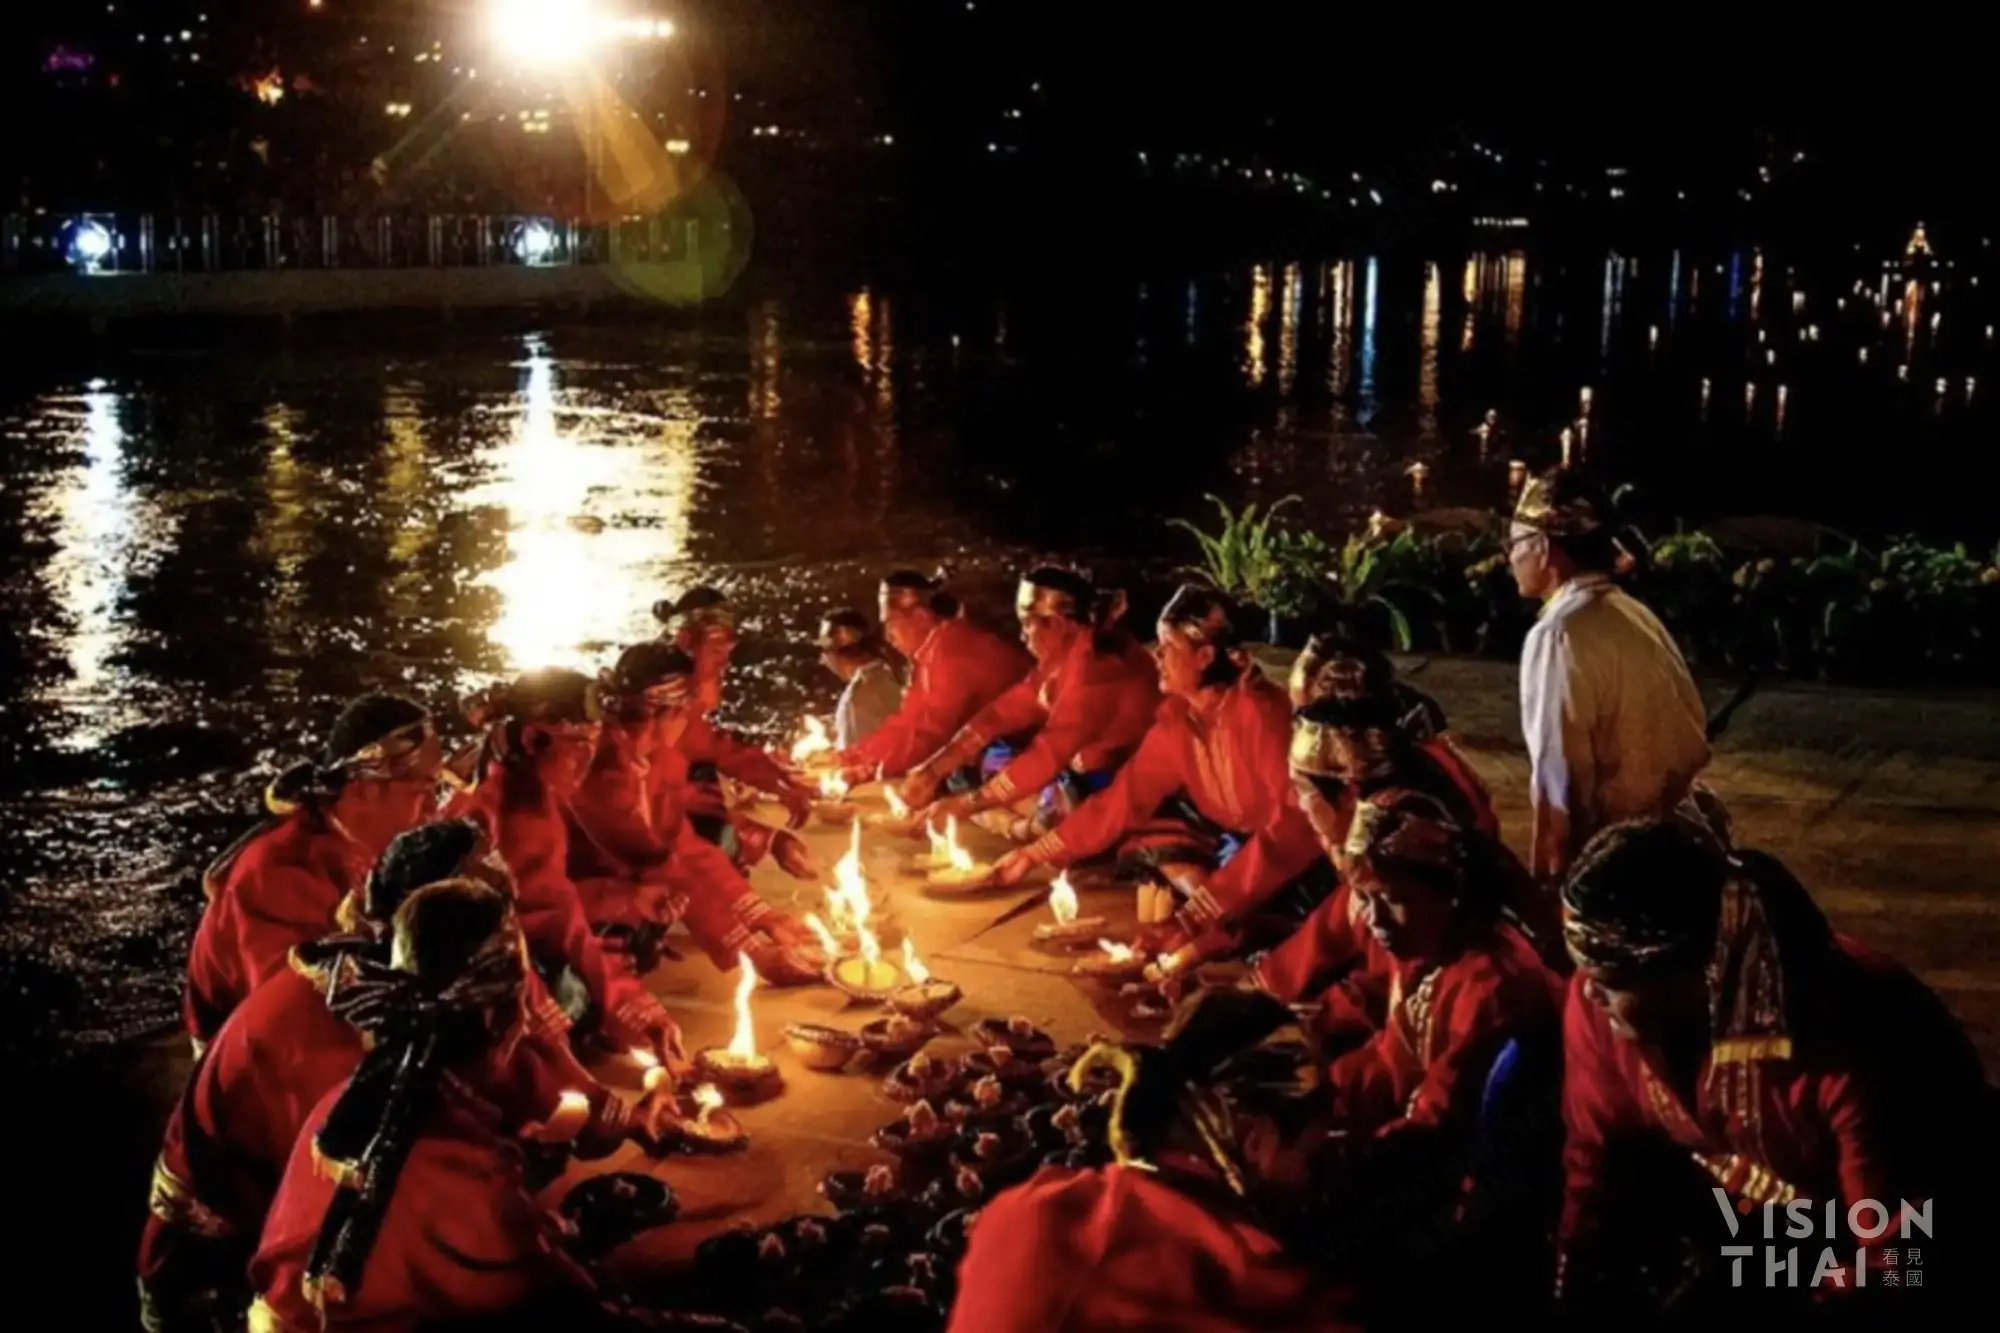 达府的水灯以椰子壳制作，在壳中放置蜡烛，用绳串成串，形成壮观的千灯连线景象（图片来源：Vision Thai 看见泰国）